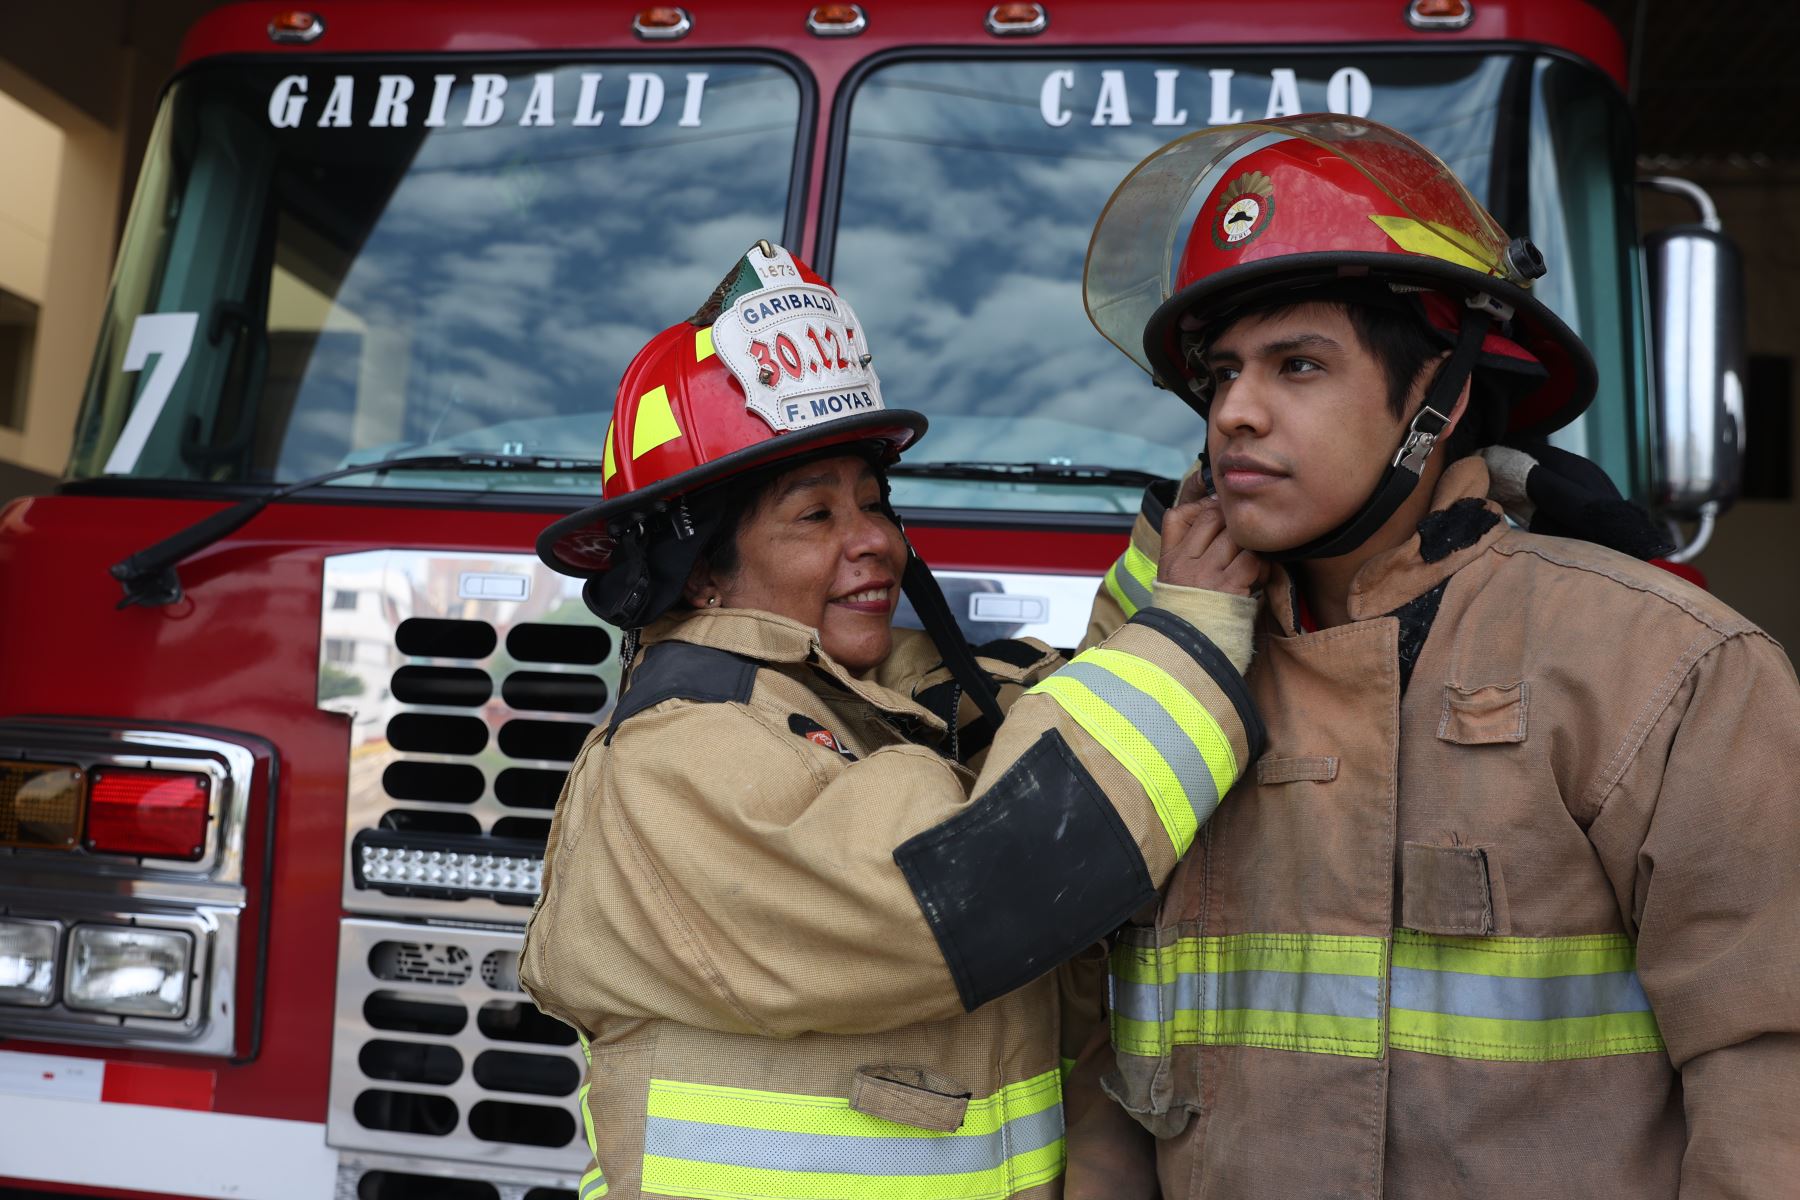 Flor de María Moya Bustíos y Néstor Gómez Moya son madre e hijo miembros de la compañía de bomberos Garibaldi 7 del  Callao. Foto: ANDINA/Melina Mejía